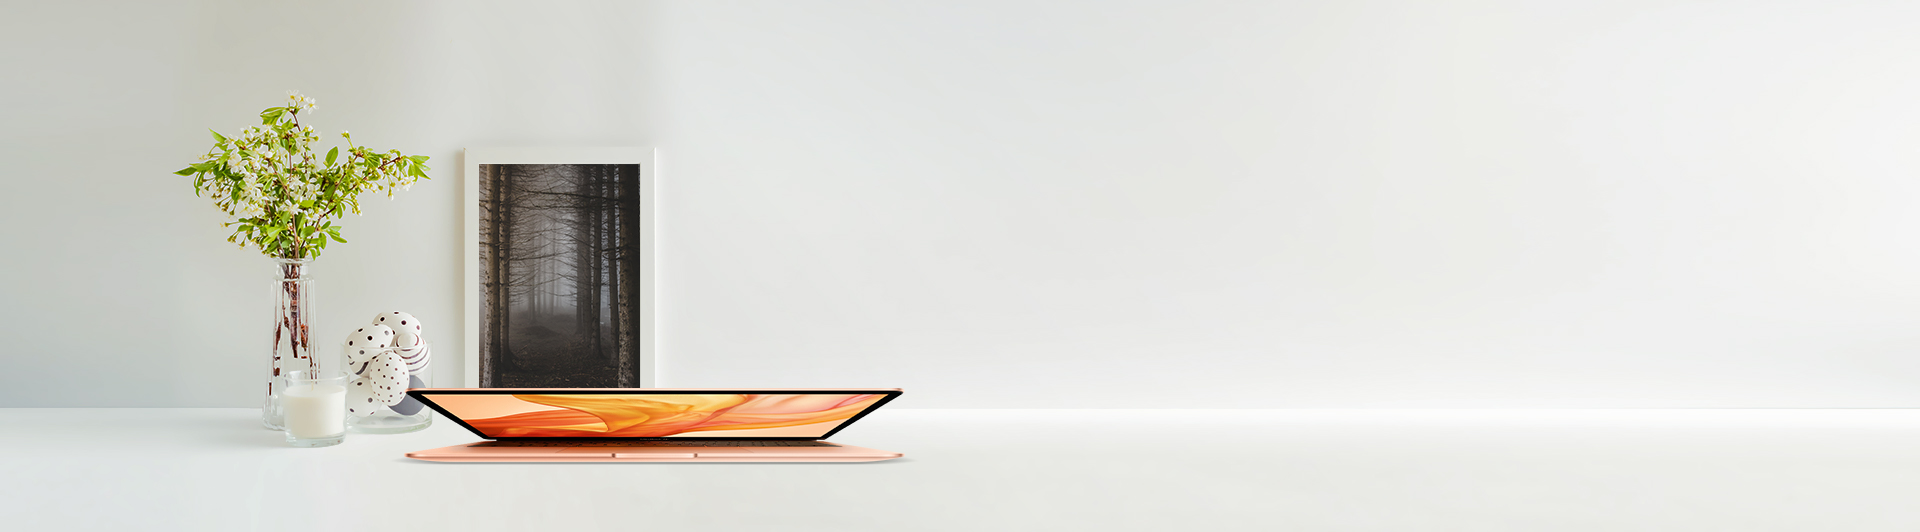 Apple Macbook Air i3 13.3 inch MWTL2SA/A 2020 cạnh bên premium